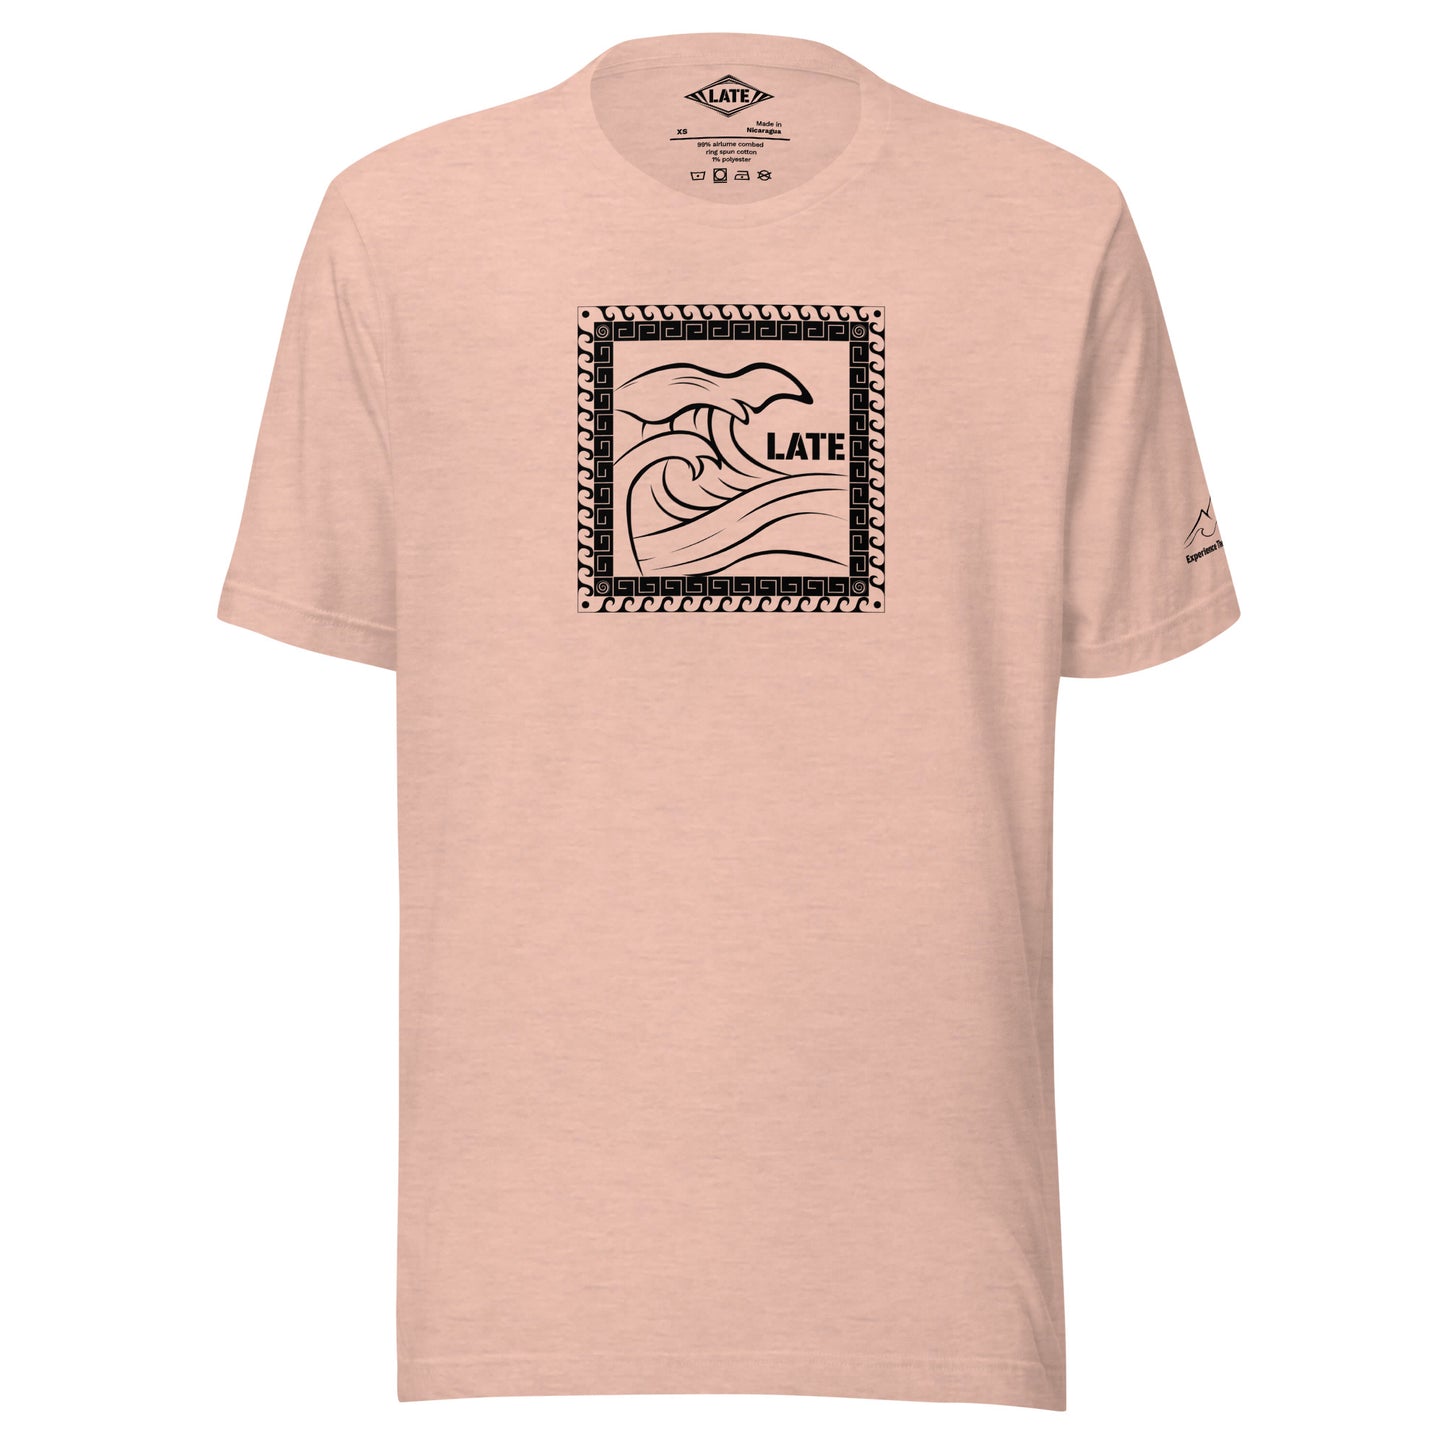 T-Shirt Tricky Wave design vague japonnaise et contour maori texte Late marque de vetement de surf. Tshirt unisex couleur rose pêche